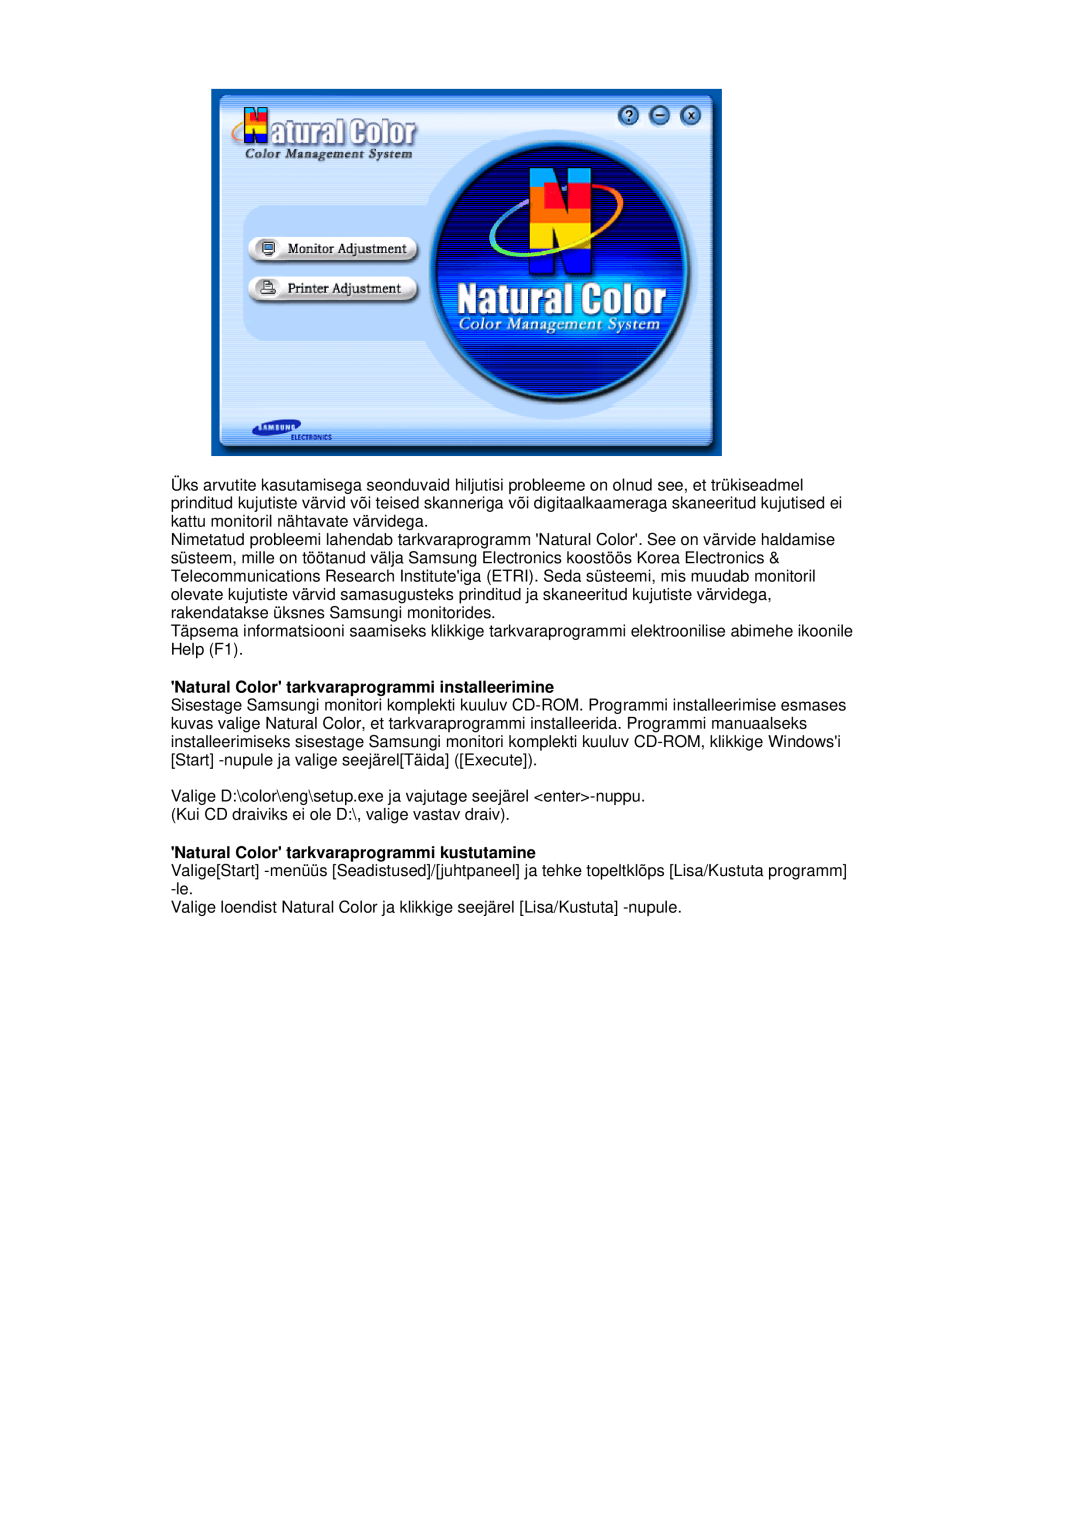 Samsung LS17HADKSX/EDC manual Natural Color tarkvaraprogrammi installeerimine, Natural Color tarkvaraprogrammi kustutamine 